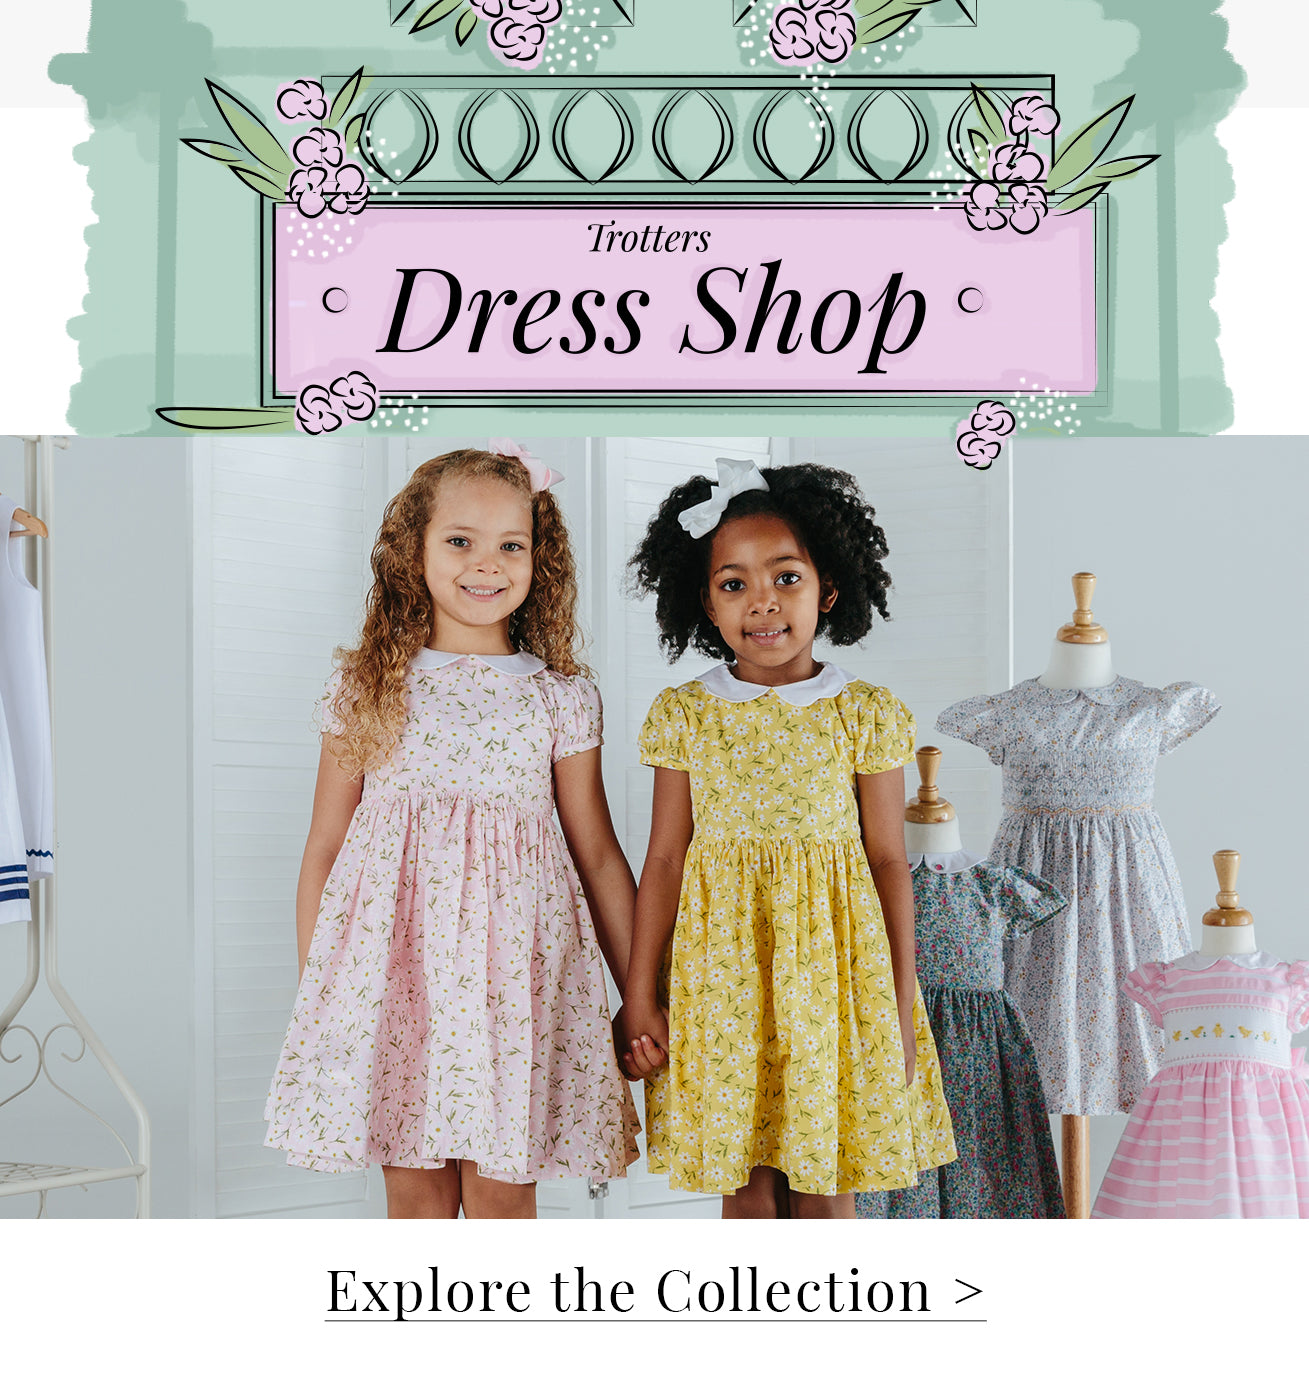 Dress Shop | Smocked Dresses | Floral Patterned Dresses – Trotters